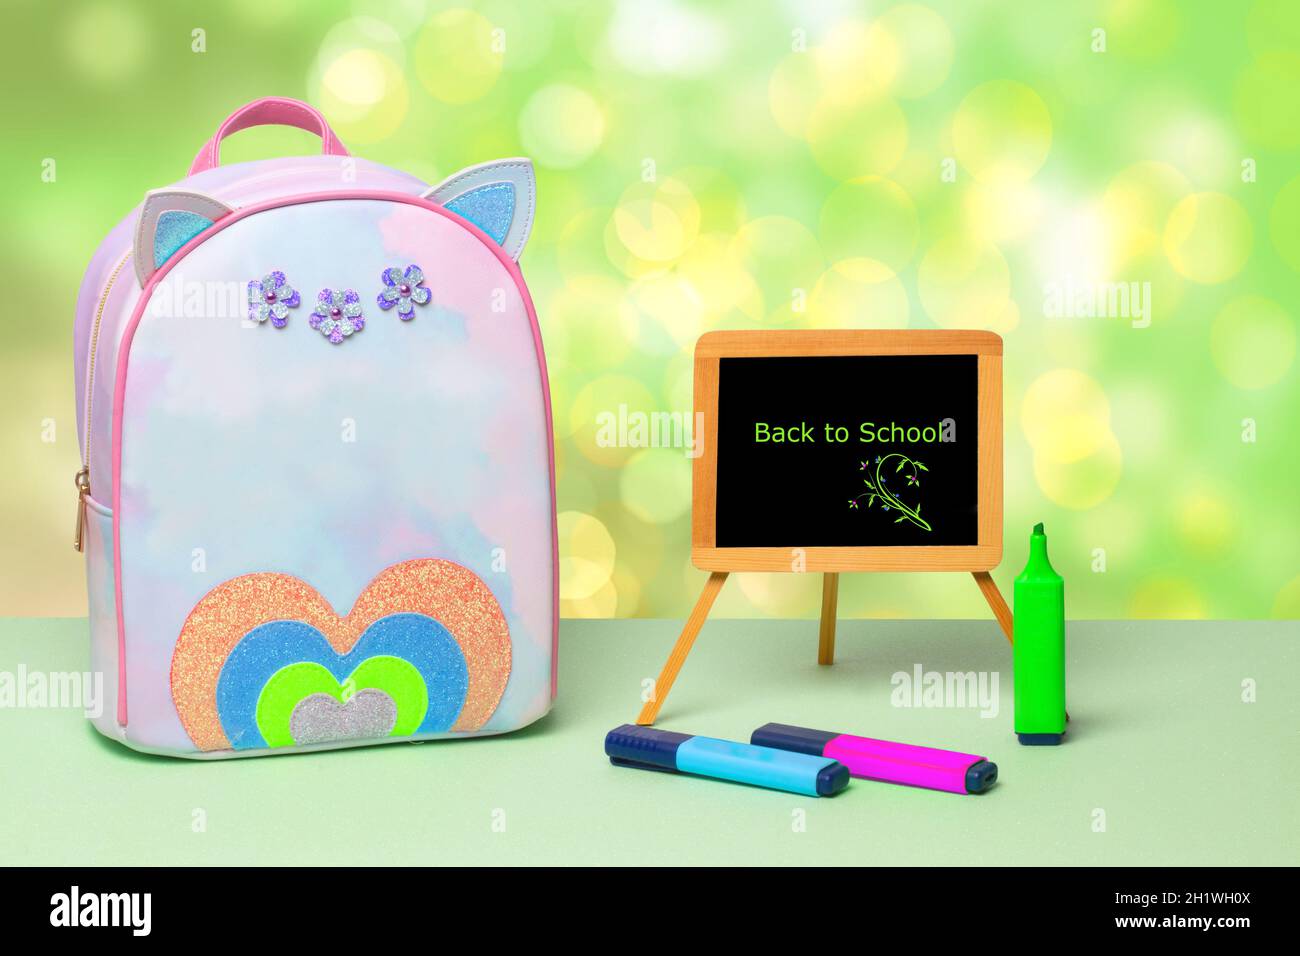 Le retour à l'école est écrit en lettres vertes sur un tableau noir, des crayons colorés et un sac à dos d'école coloré sur une table verte au-dessus d'un résumé Banque D'Images